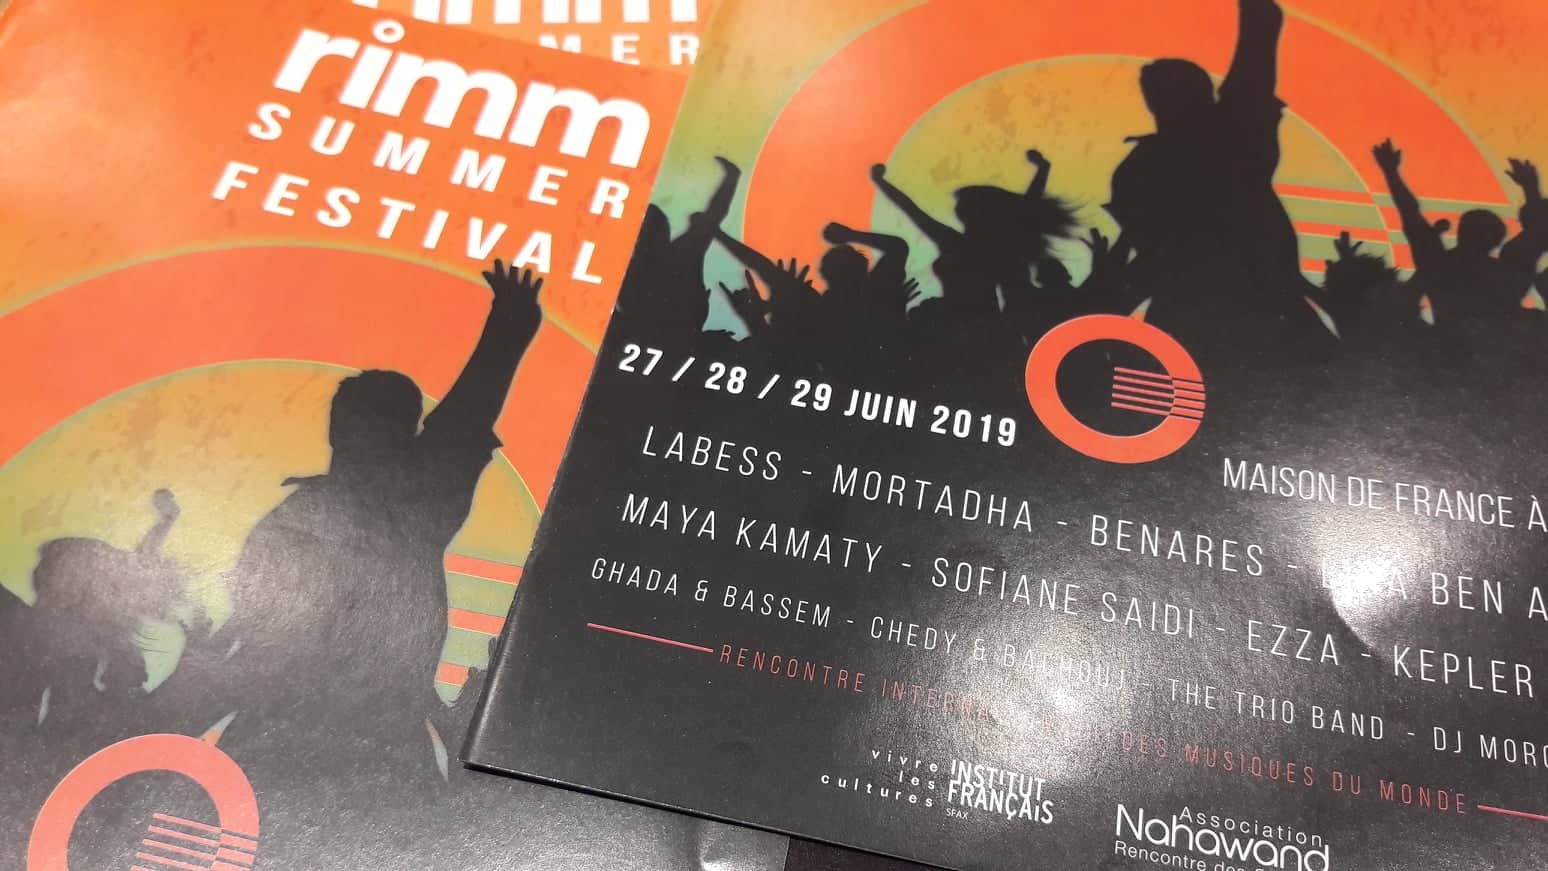 le Festival R.I.M.M, aura lieu du 27 au 29 juin 2019